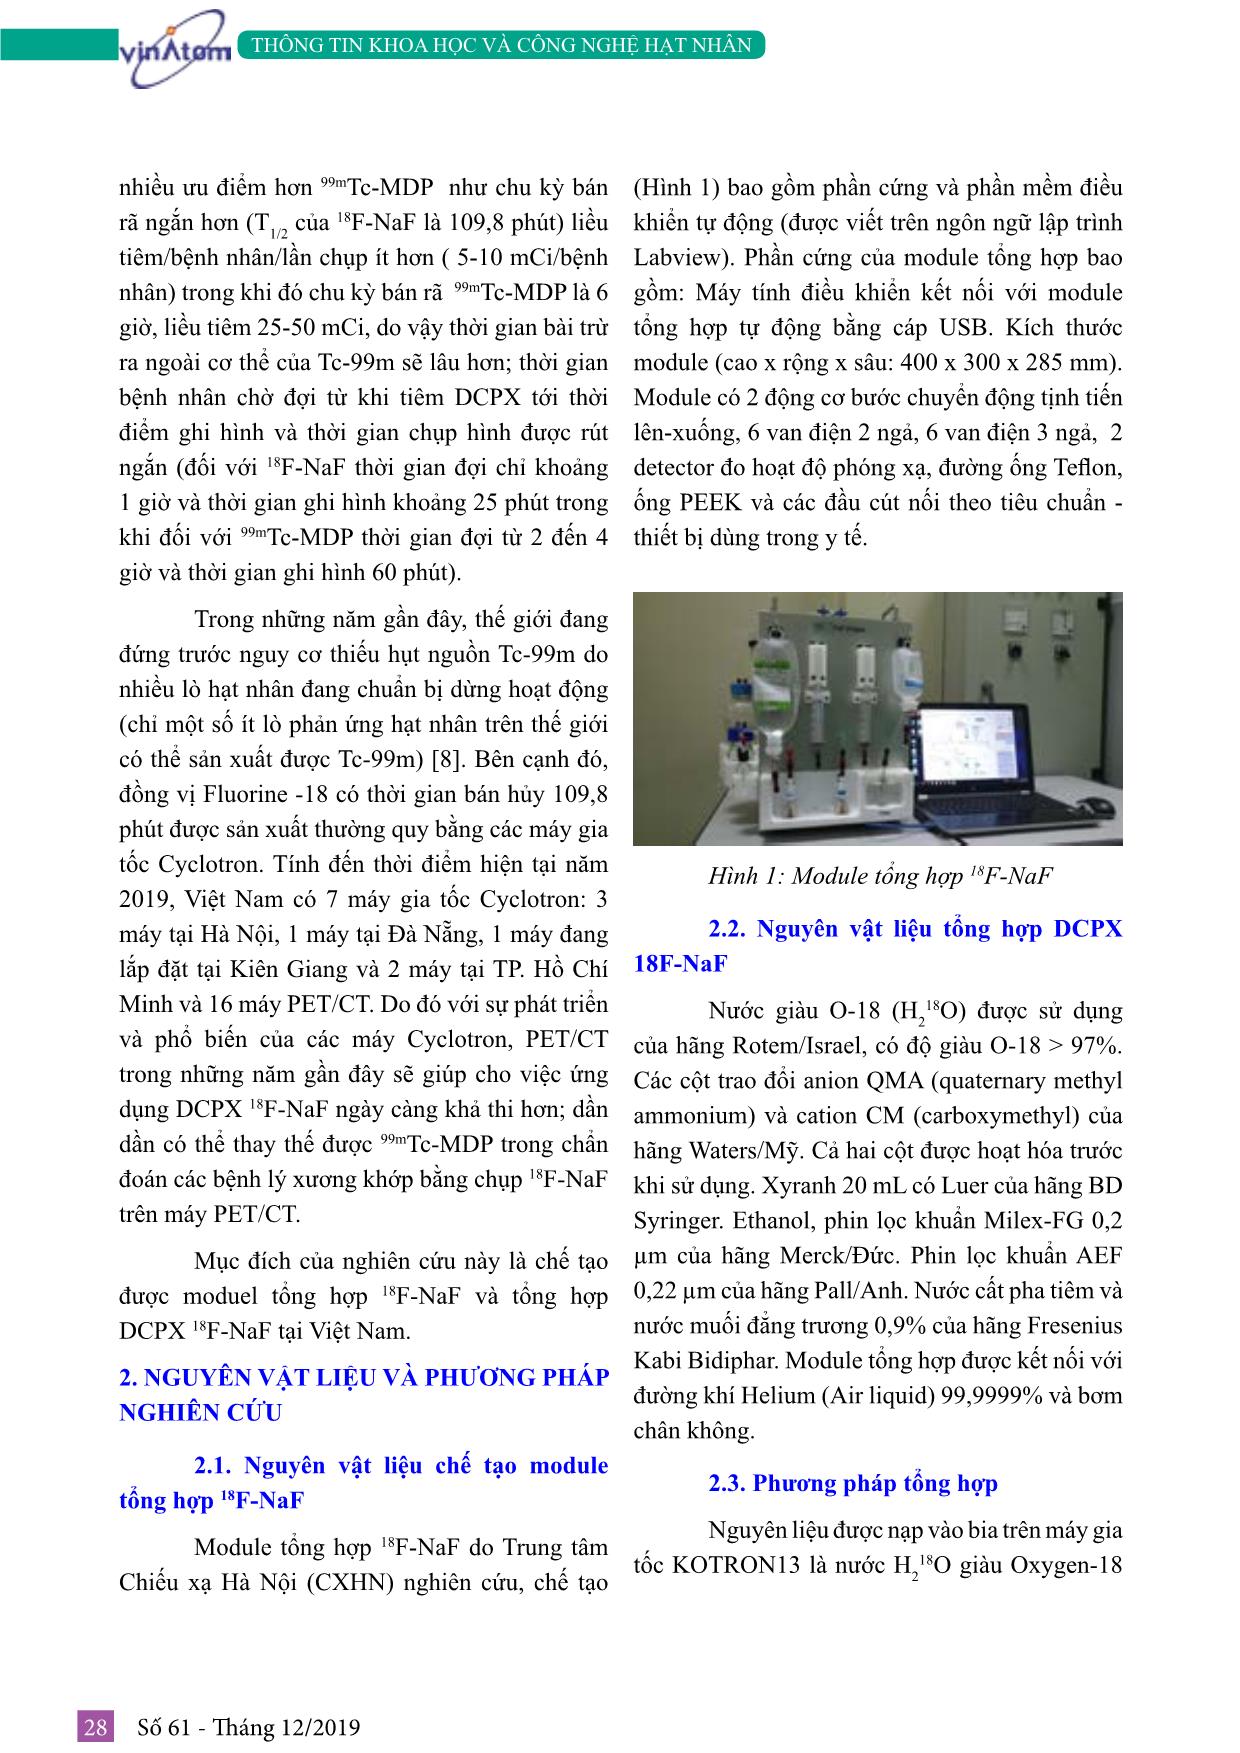 Nghiên cứu chế tạo module tổng hợp 18F-NAF và điều chế dược chất phóng xạ 18F-NAF tại trung tâm chiếu xạ Hà Nội trang 2